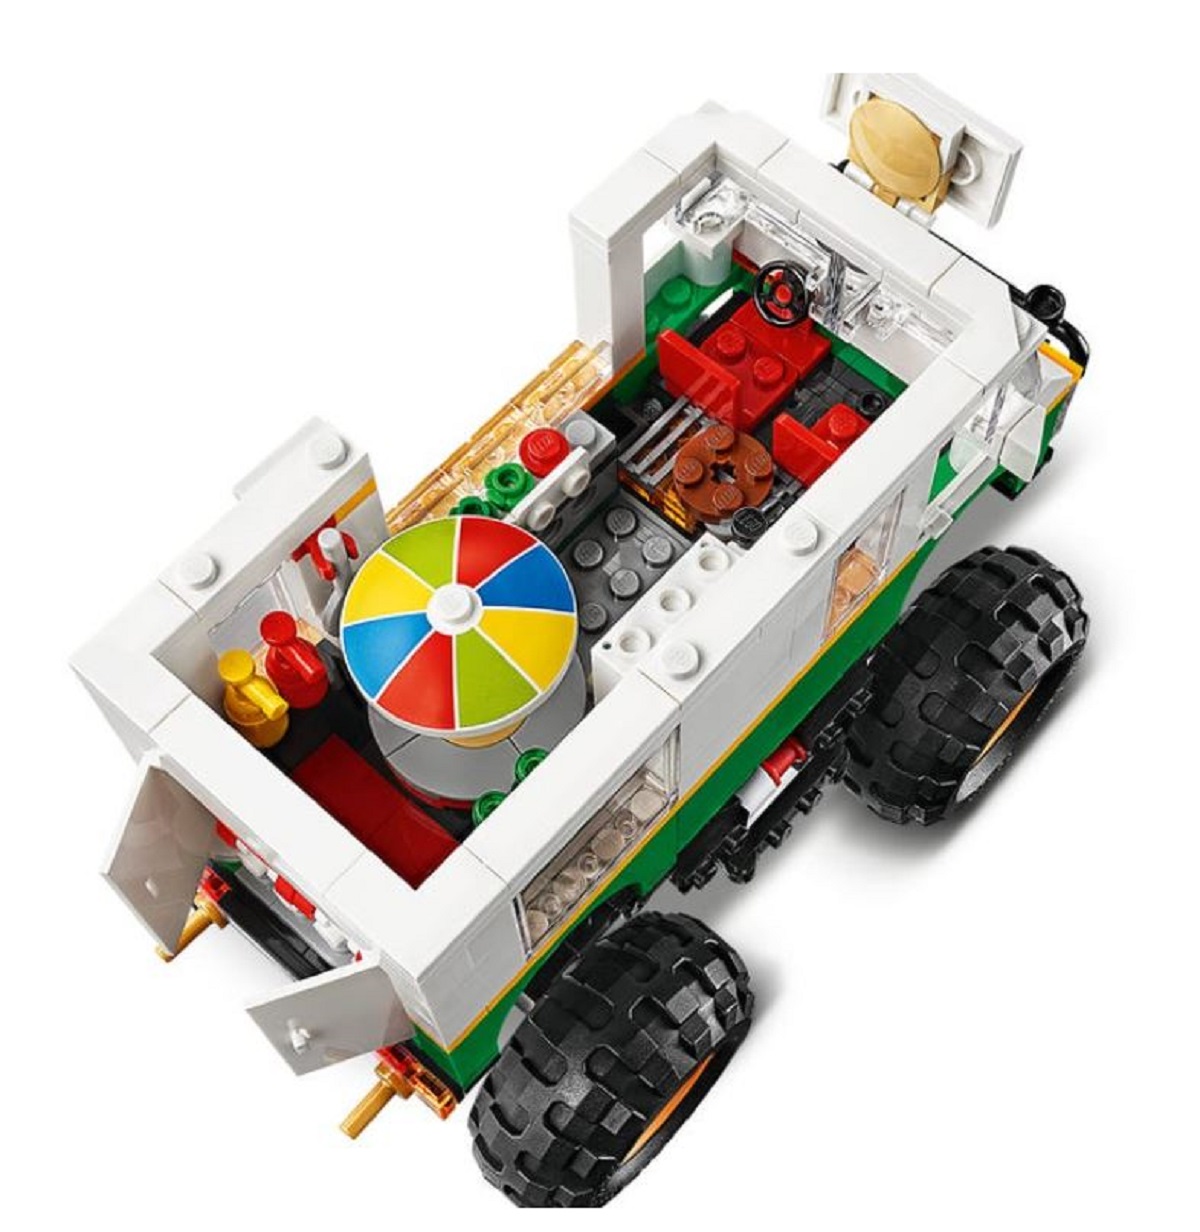 Lego Creator. Camion gigant cu burger 3 in 1